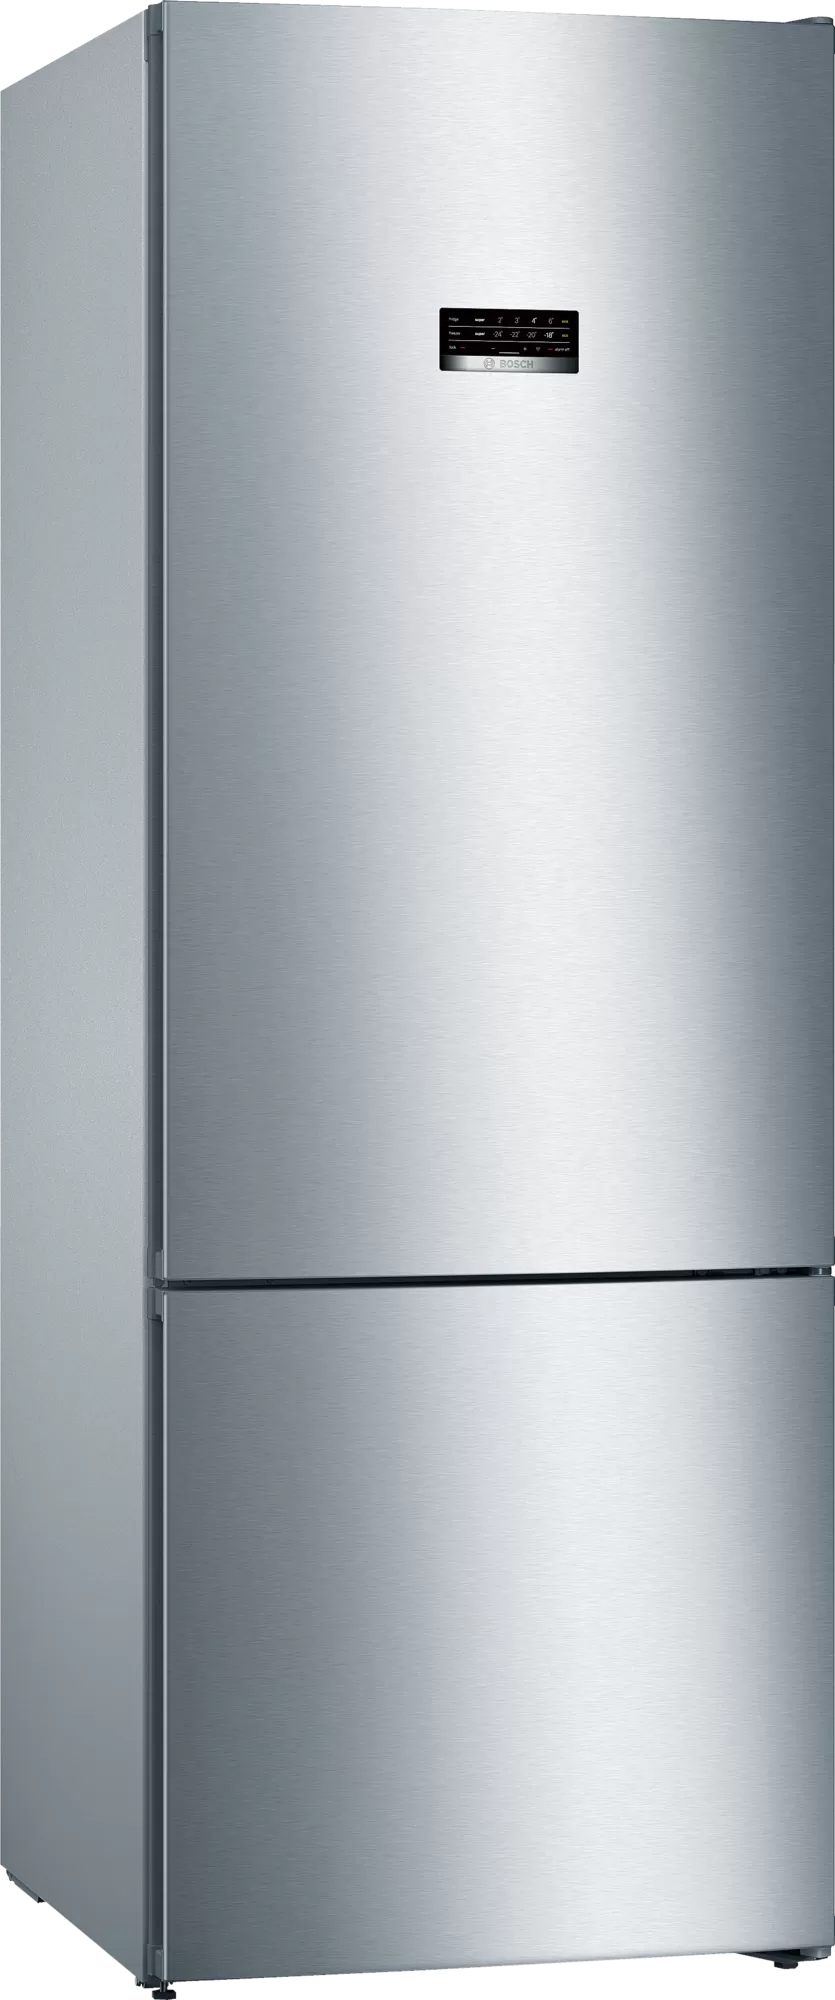 Xолодильник двухкамерный Bosch KGN56VI20R (нержавеющая сталь)